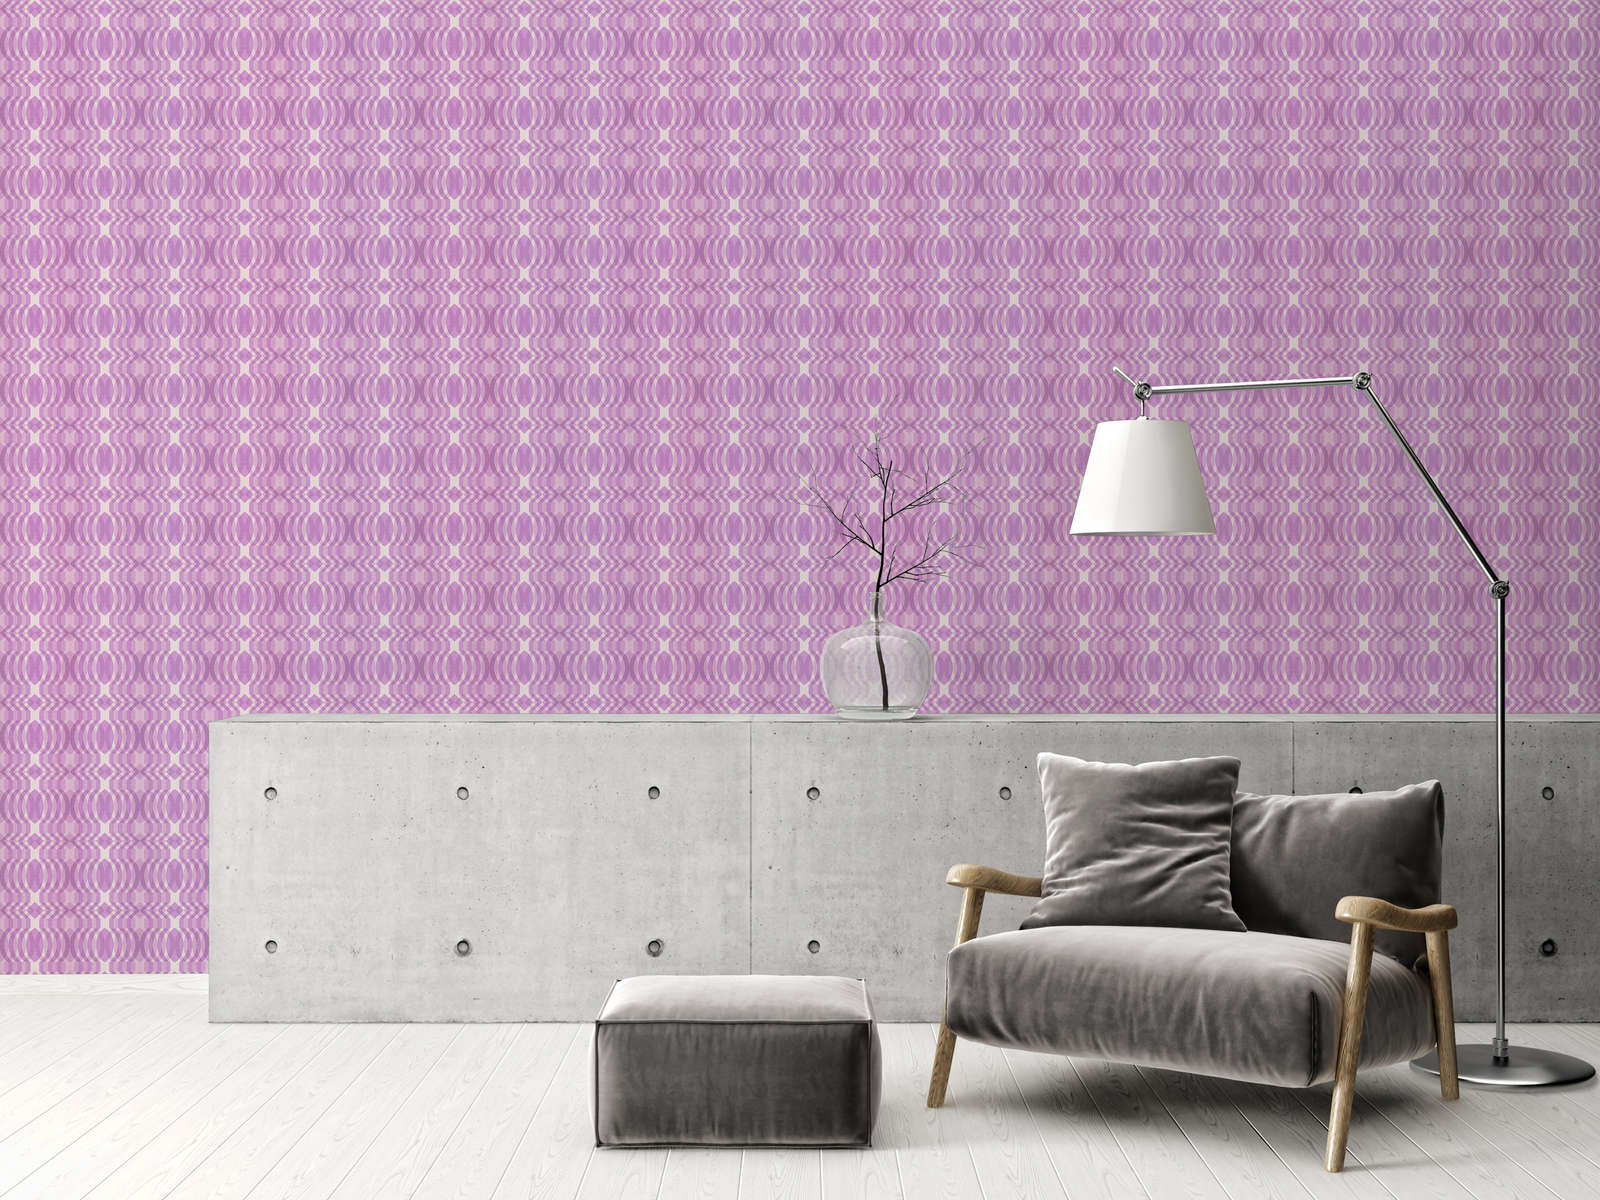             Vliesbehang met geometrisch patroon in retrostijl - paars, crème, wit
        